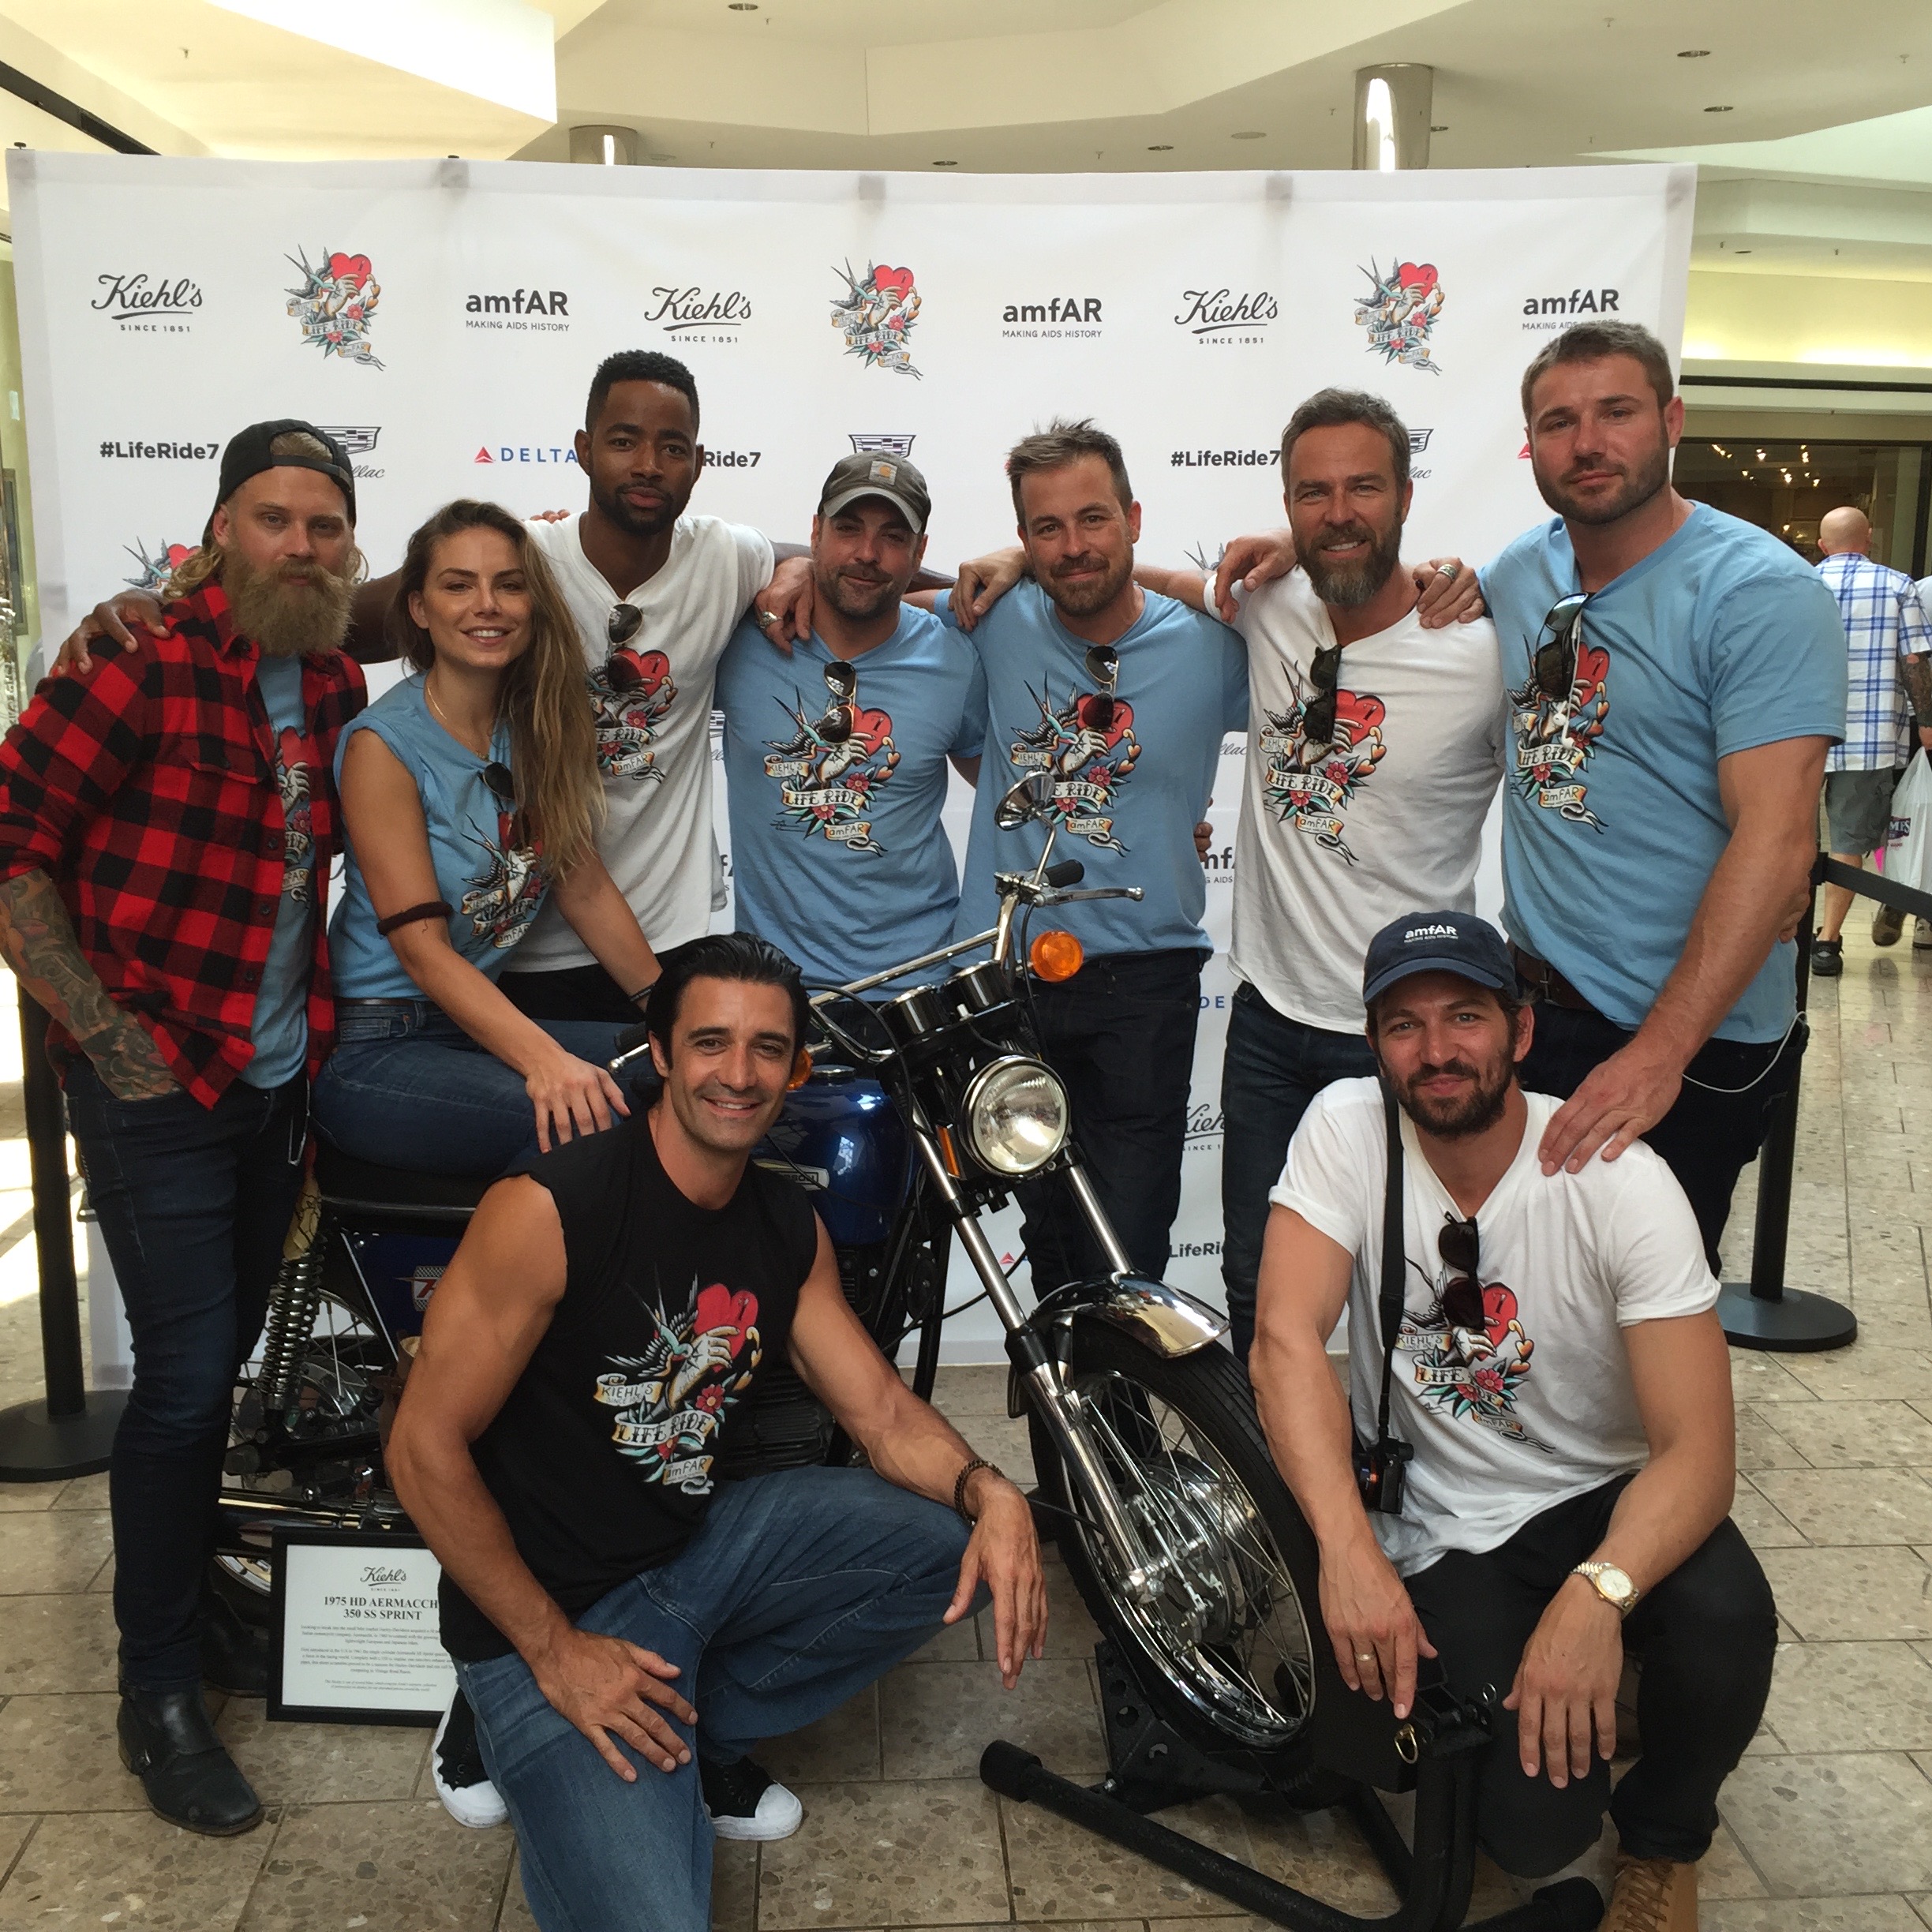 LifeRide: Charity Motorcycle Ride w/Kiehls in support of amfar